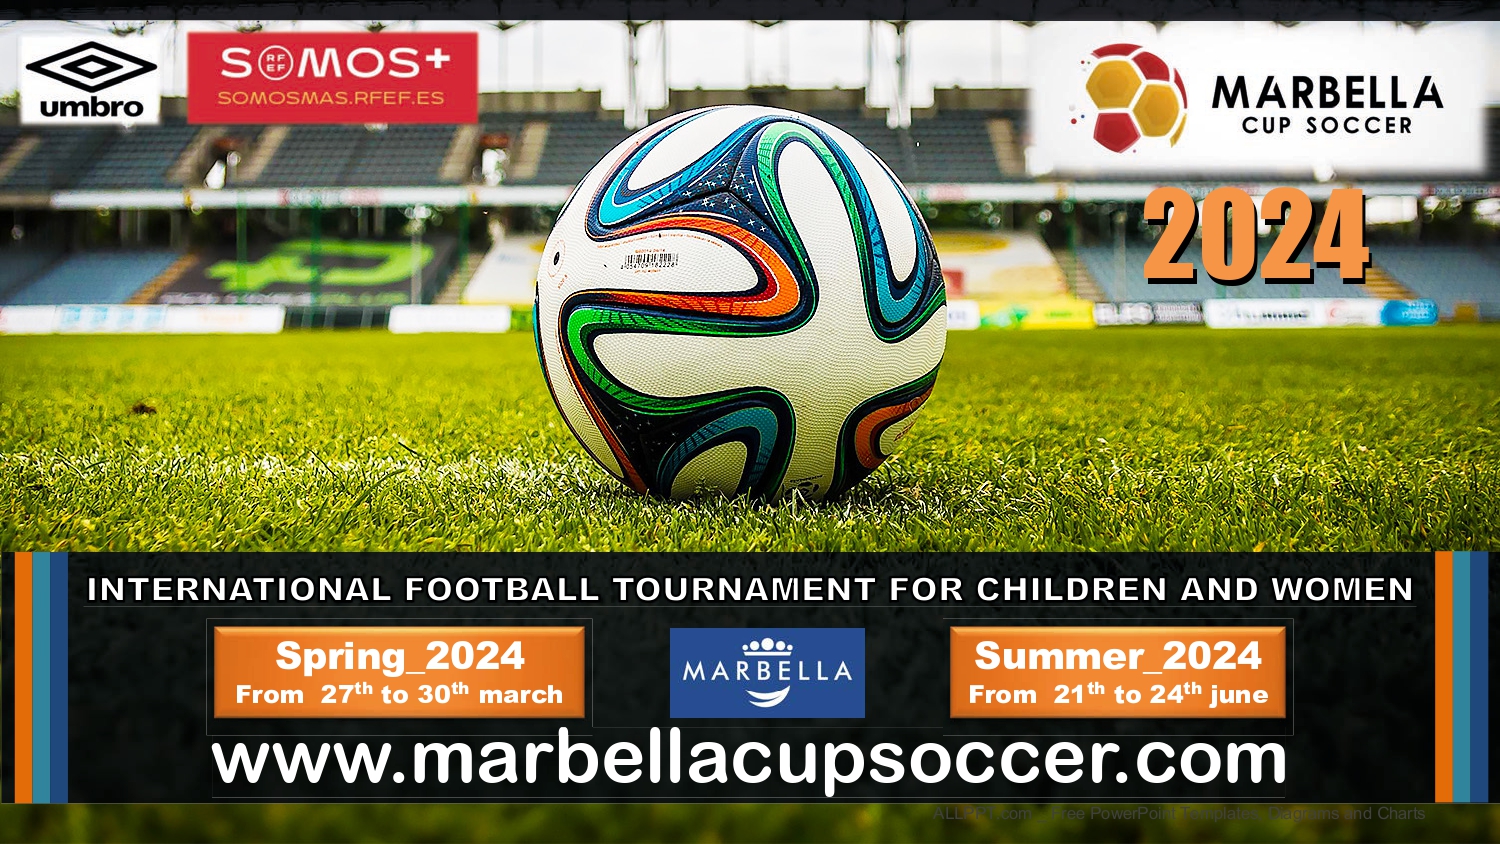 Marbella Cup Soccer - Torneo de fútbol base internacional